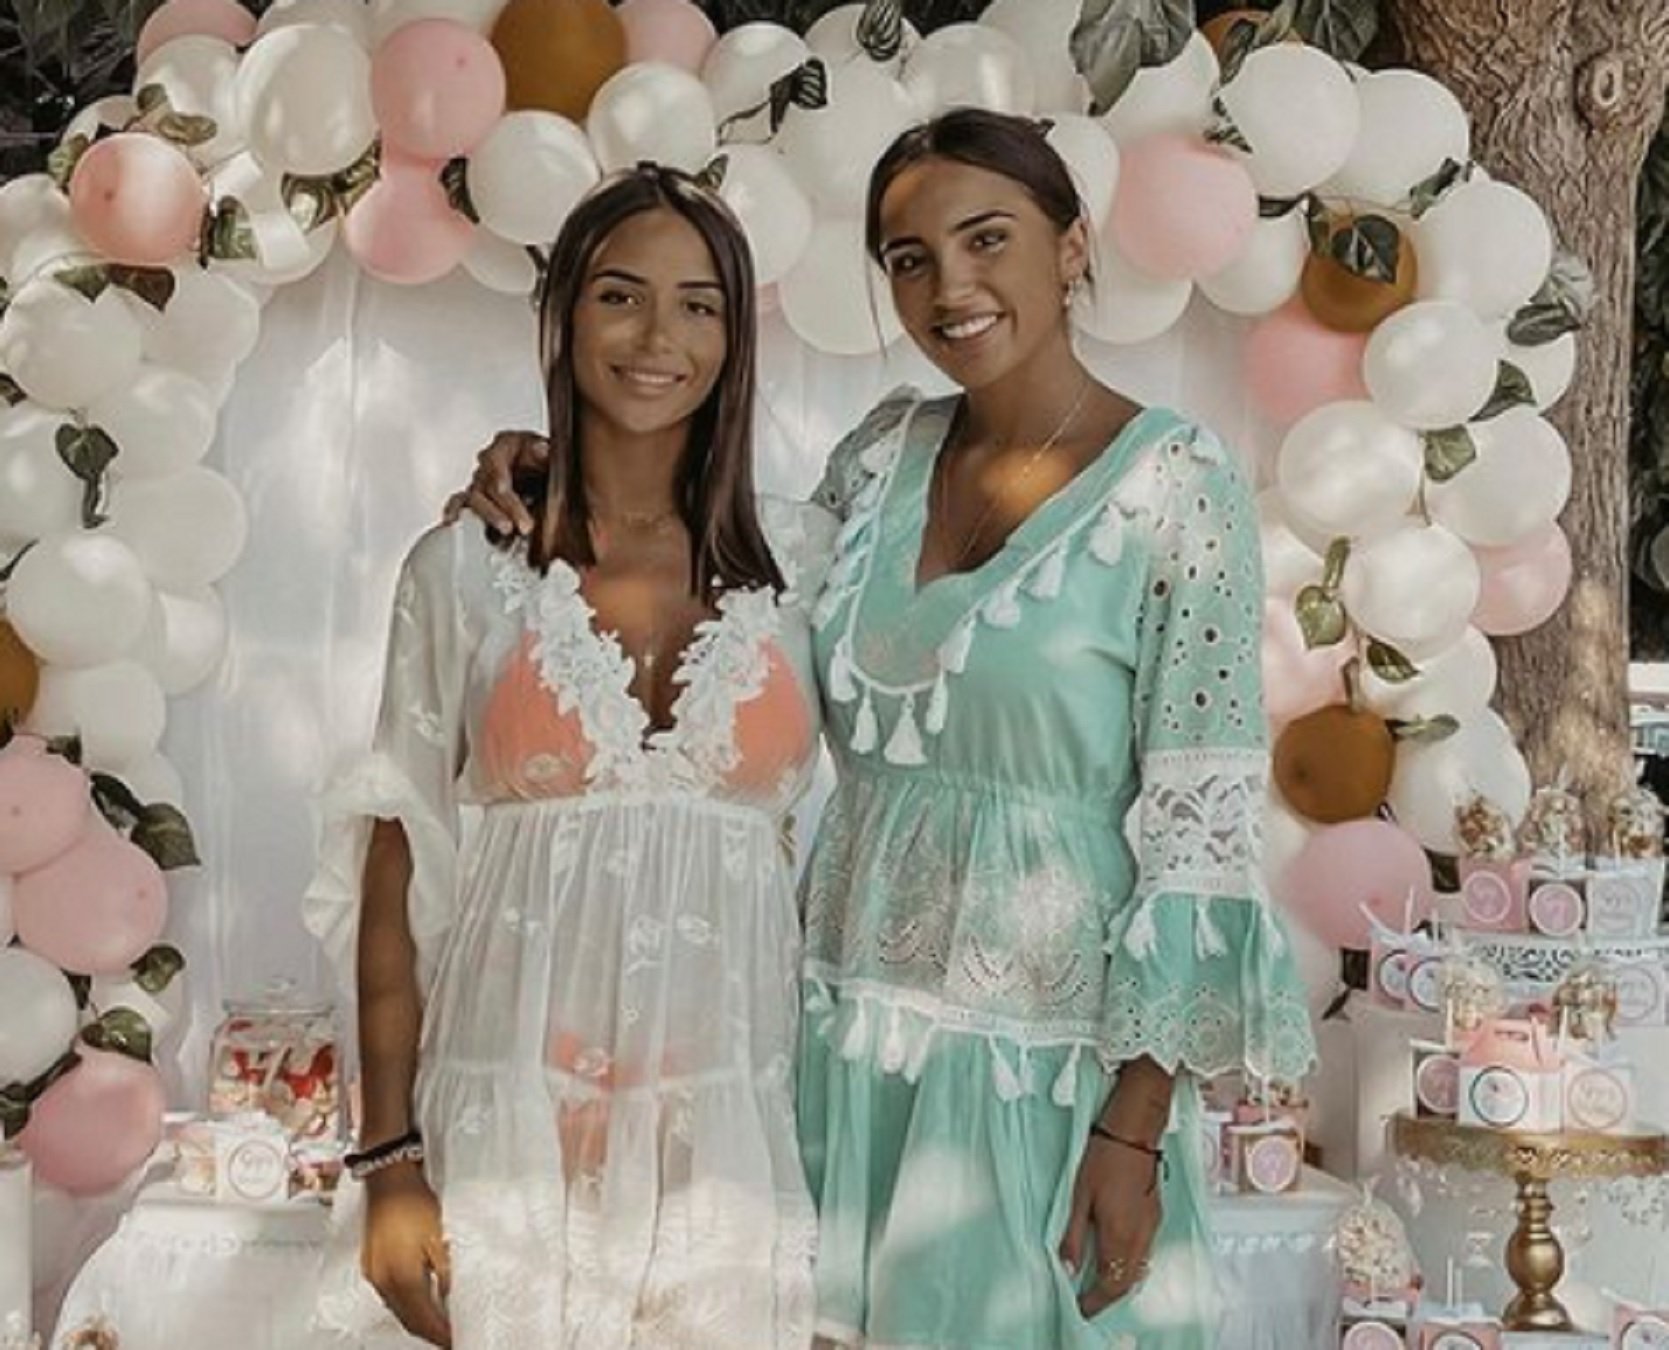 El nuevo negocio de las hermanas Pica que va como un cohete a ritmo de sold out: "Tela Marinera"